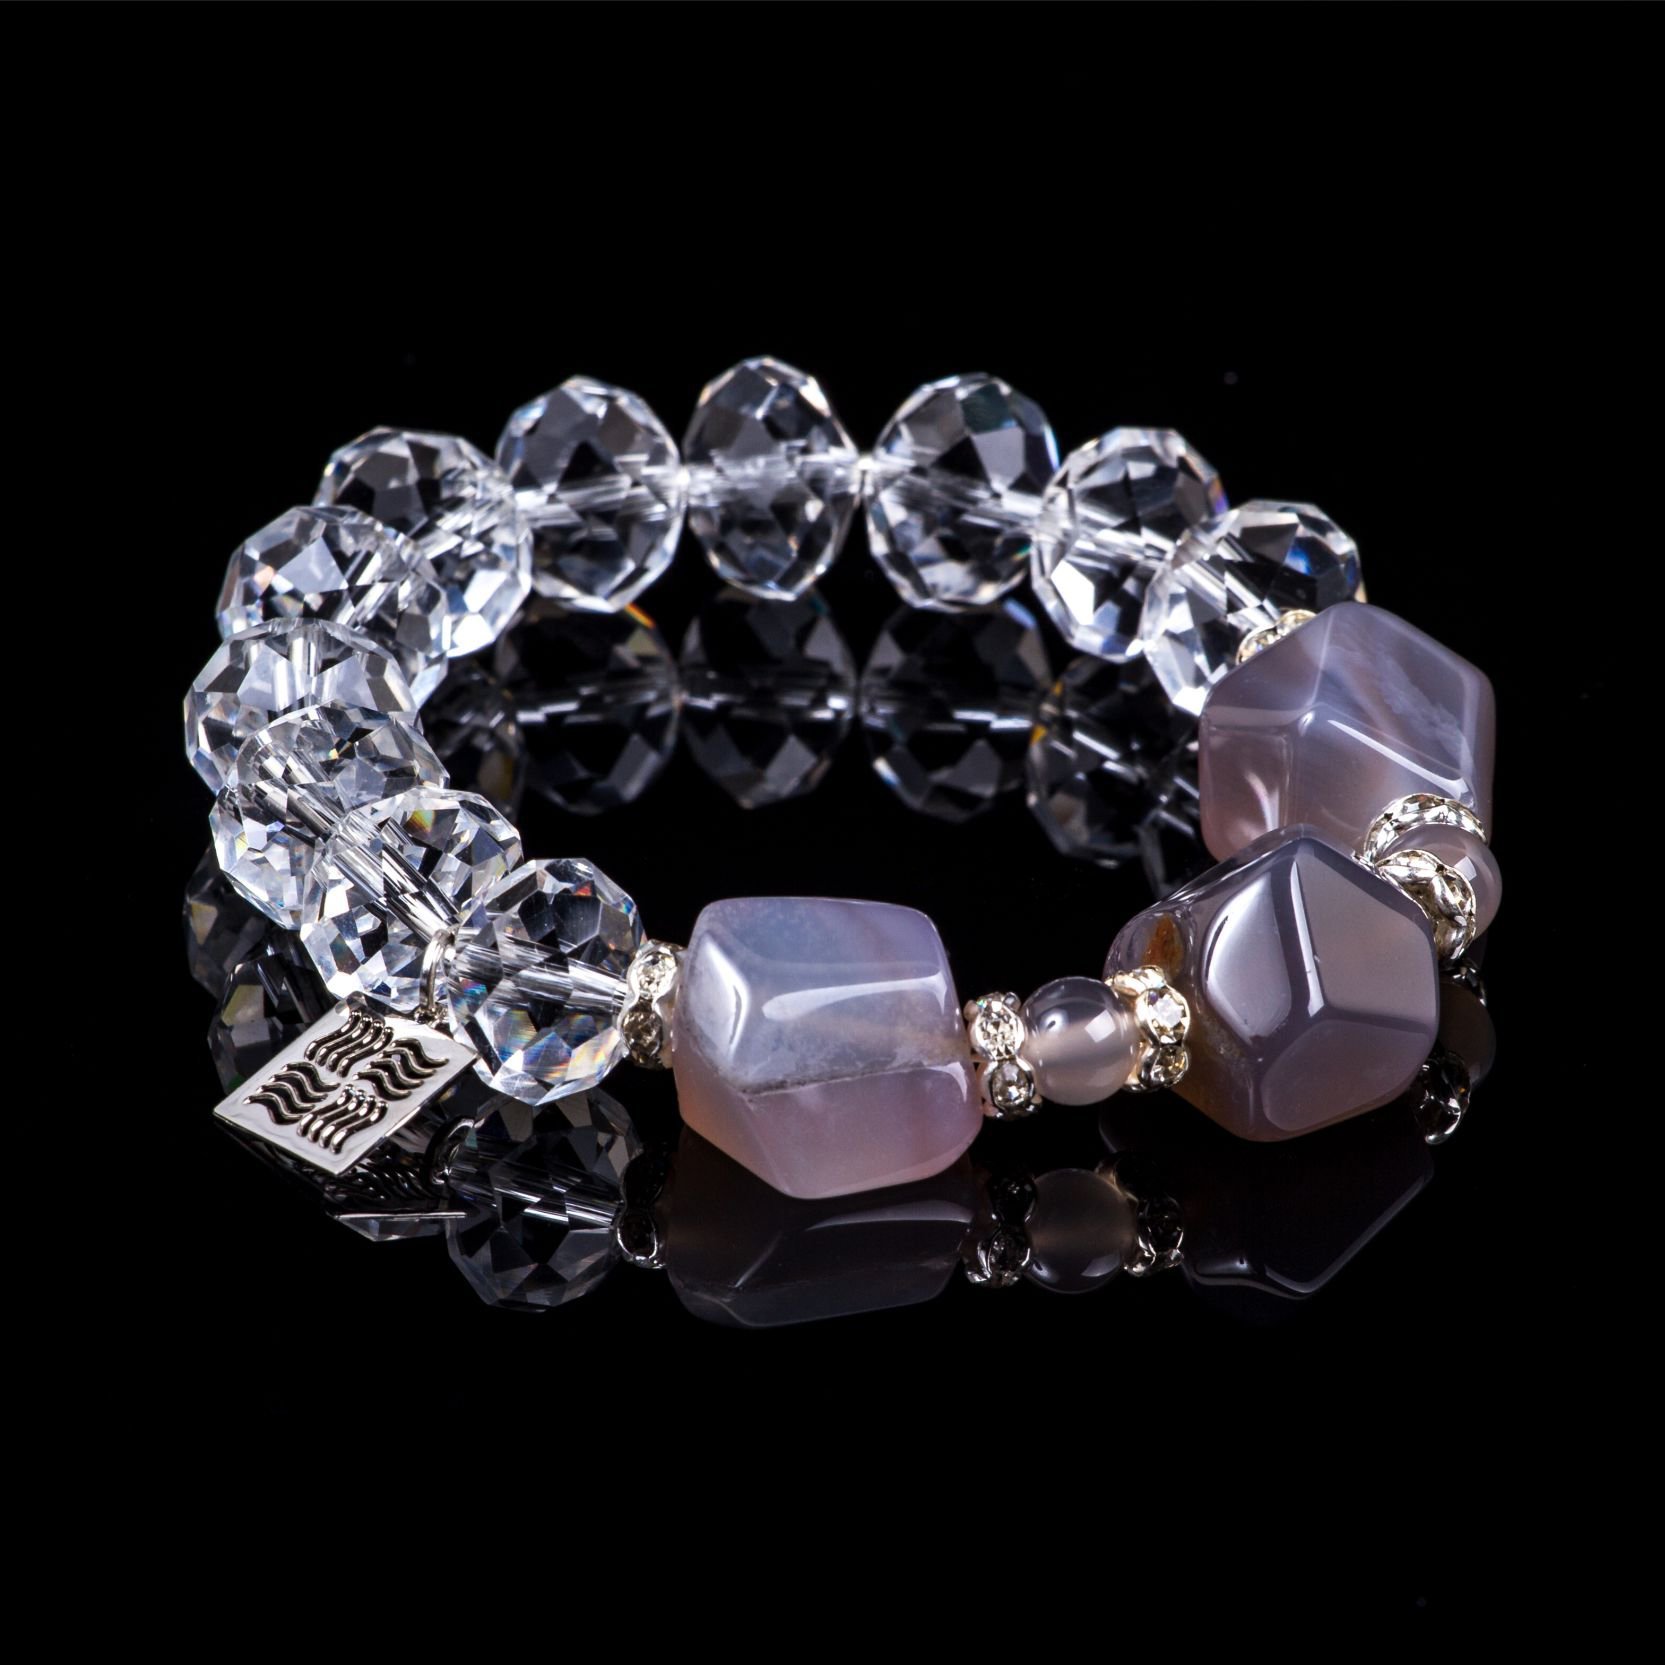 Bracelet of the collection "Crystal Symphony"